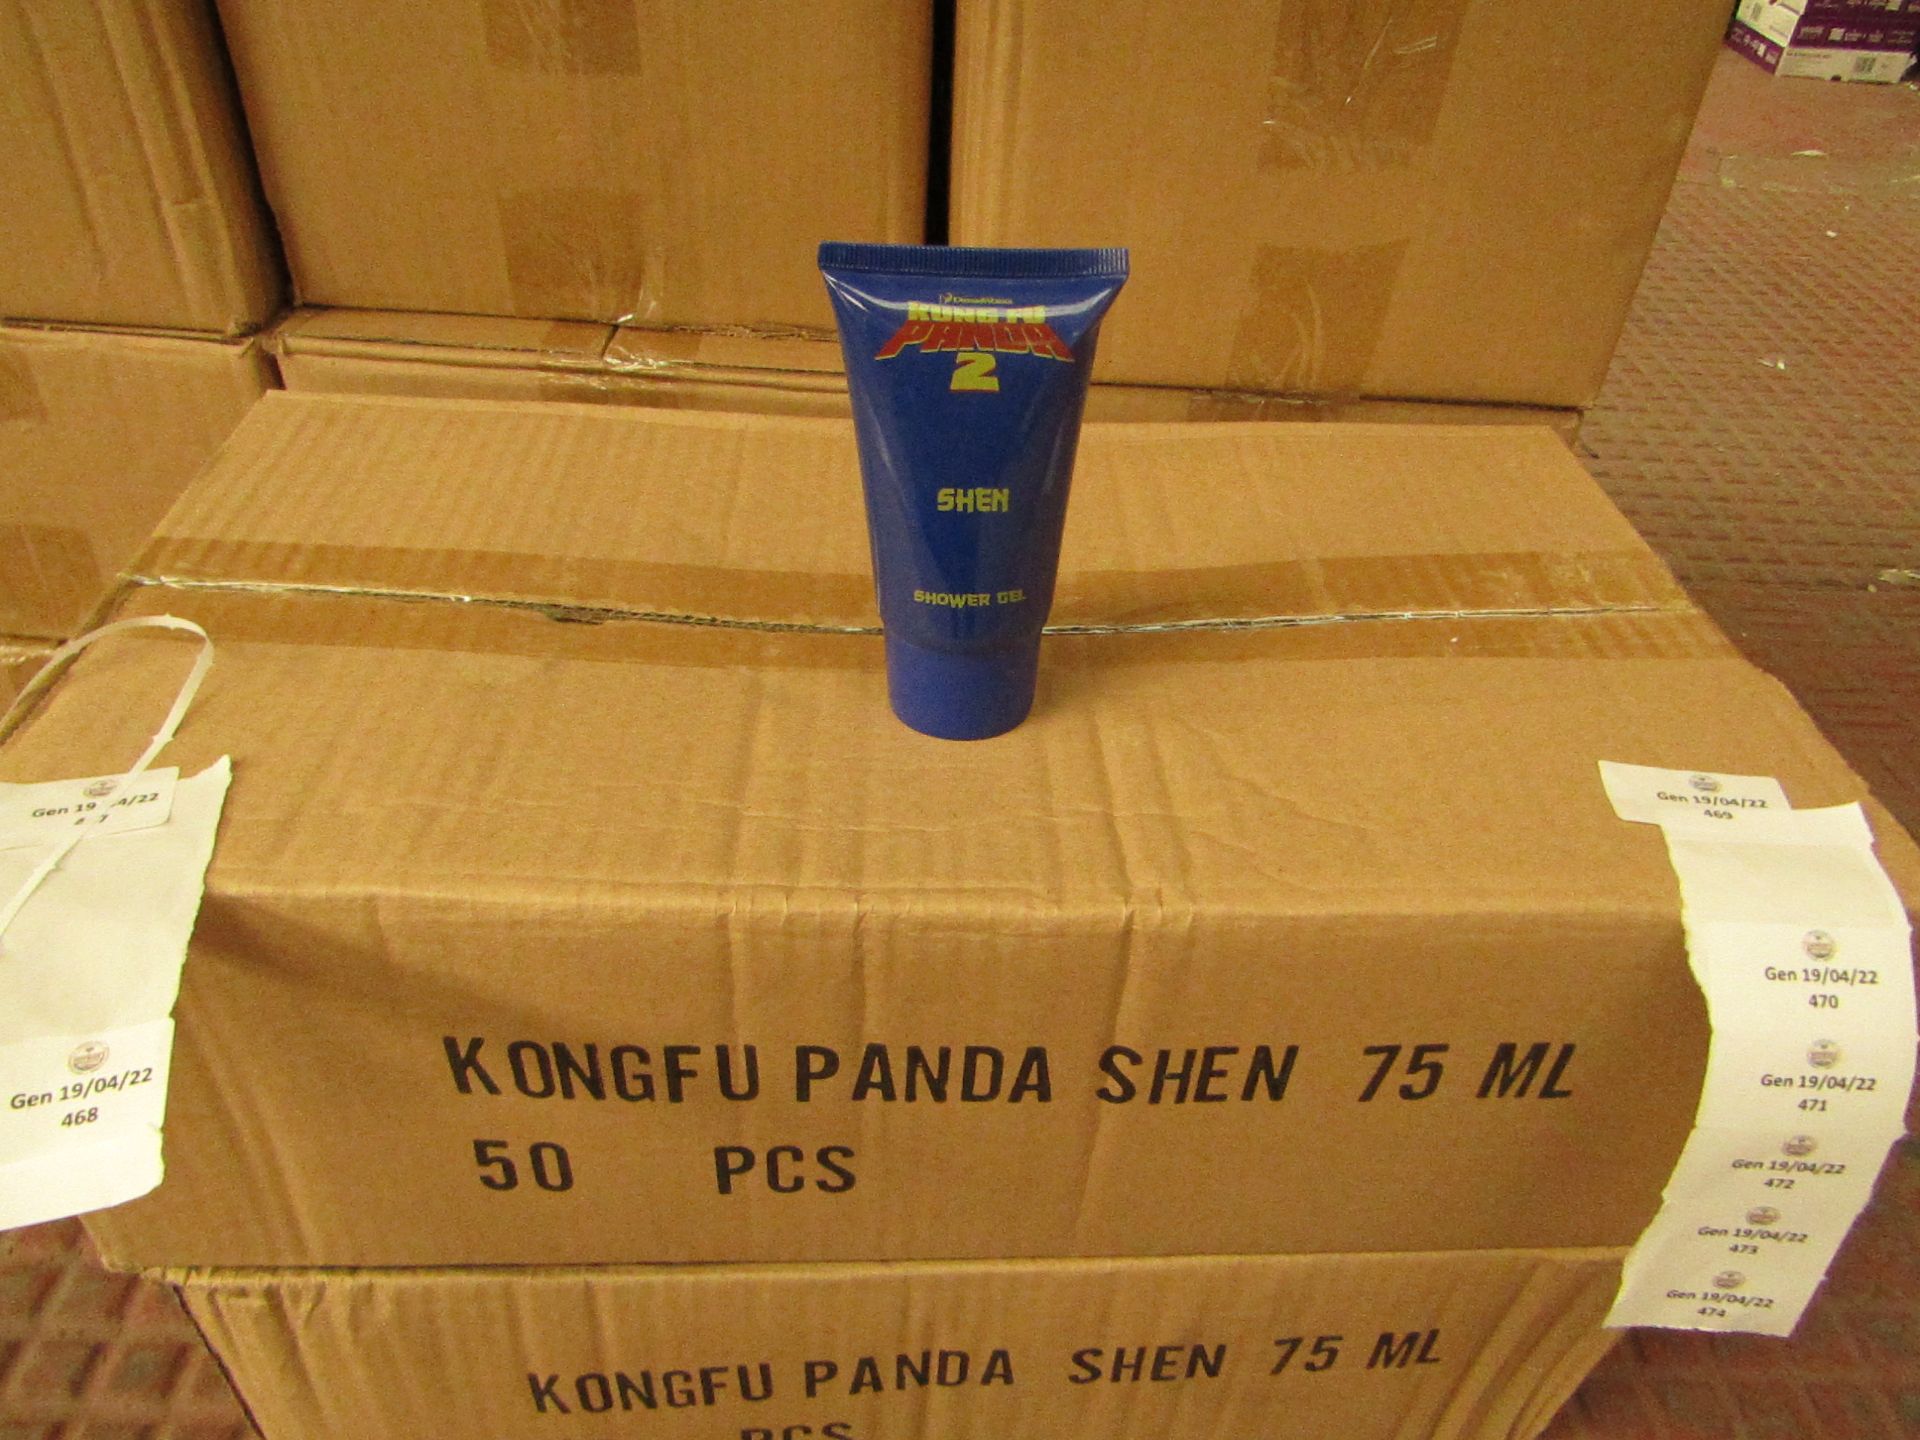 50x Kung Fu Panda - SHEN Shower Gel - 75ml - New & Boxed.